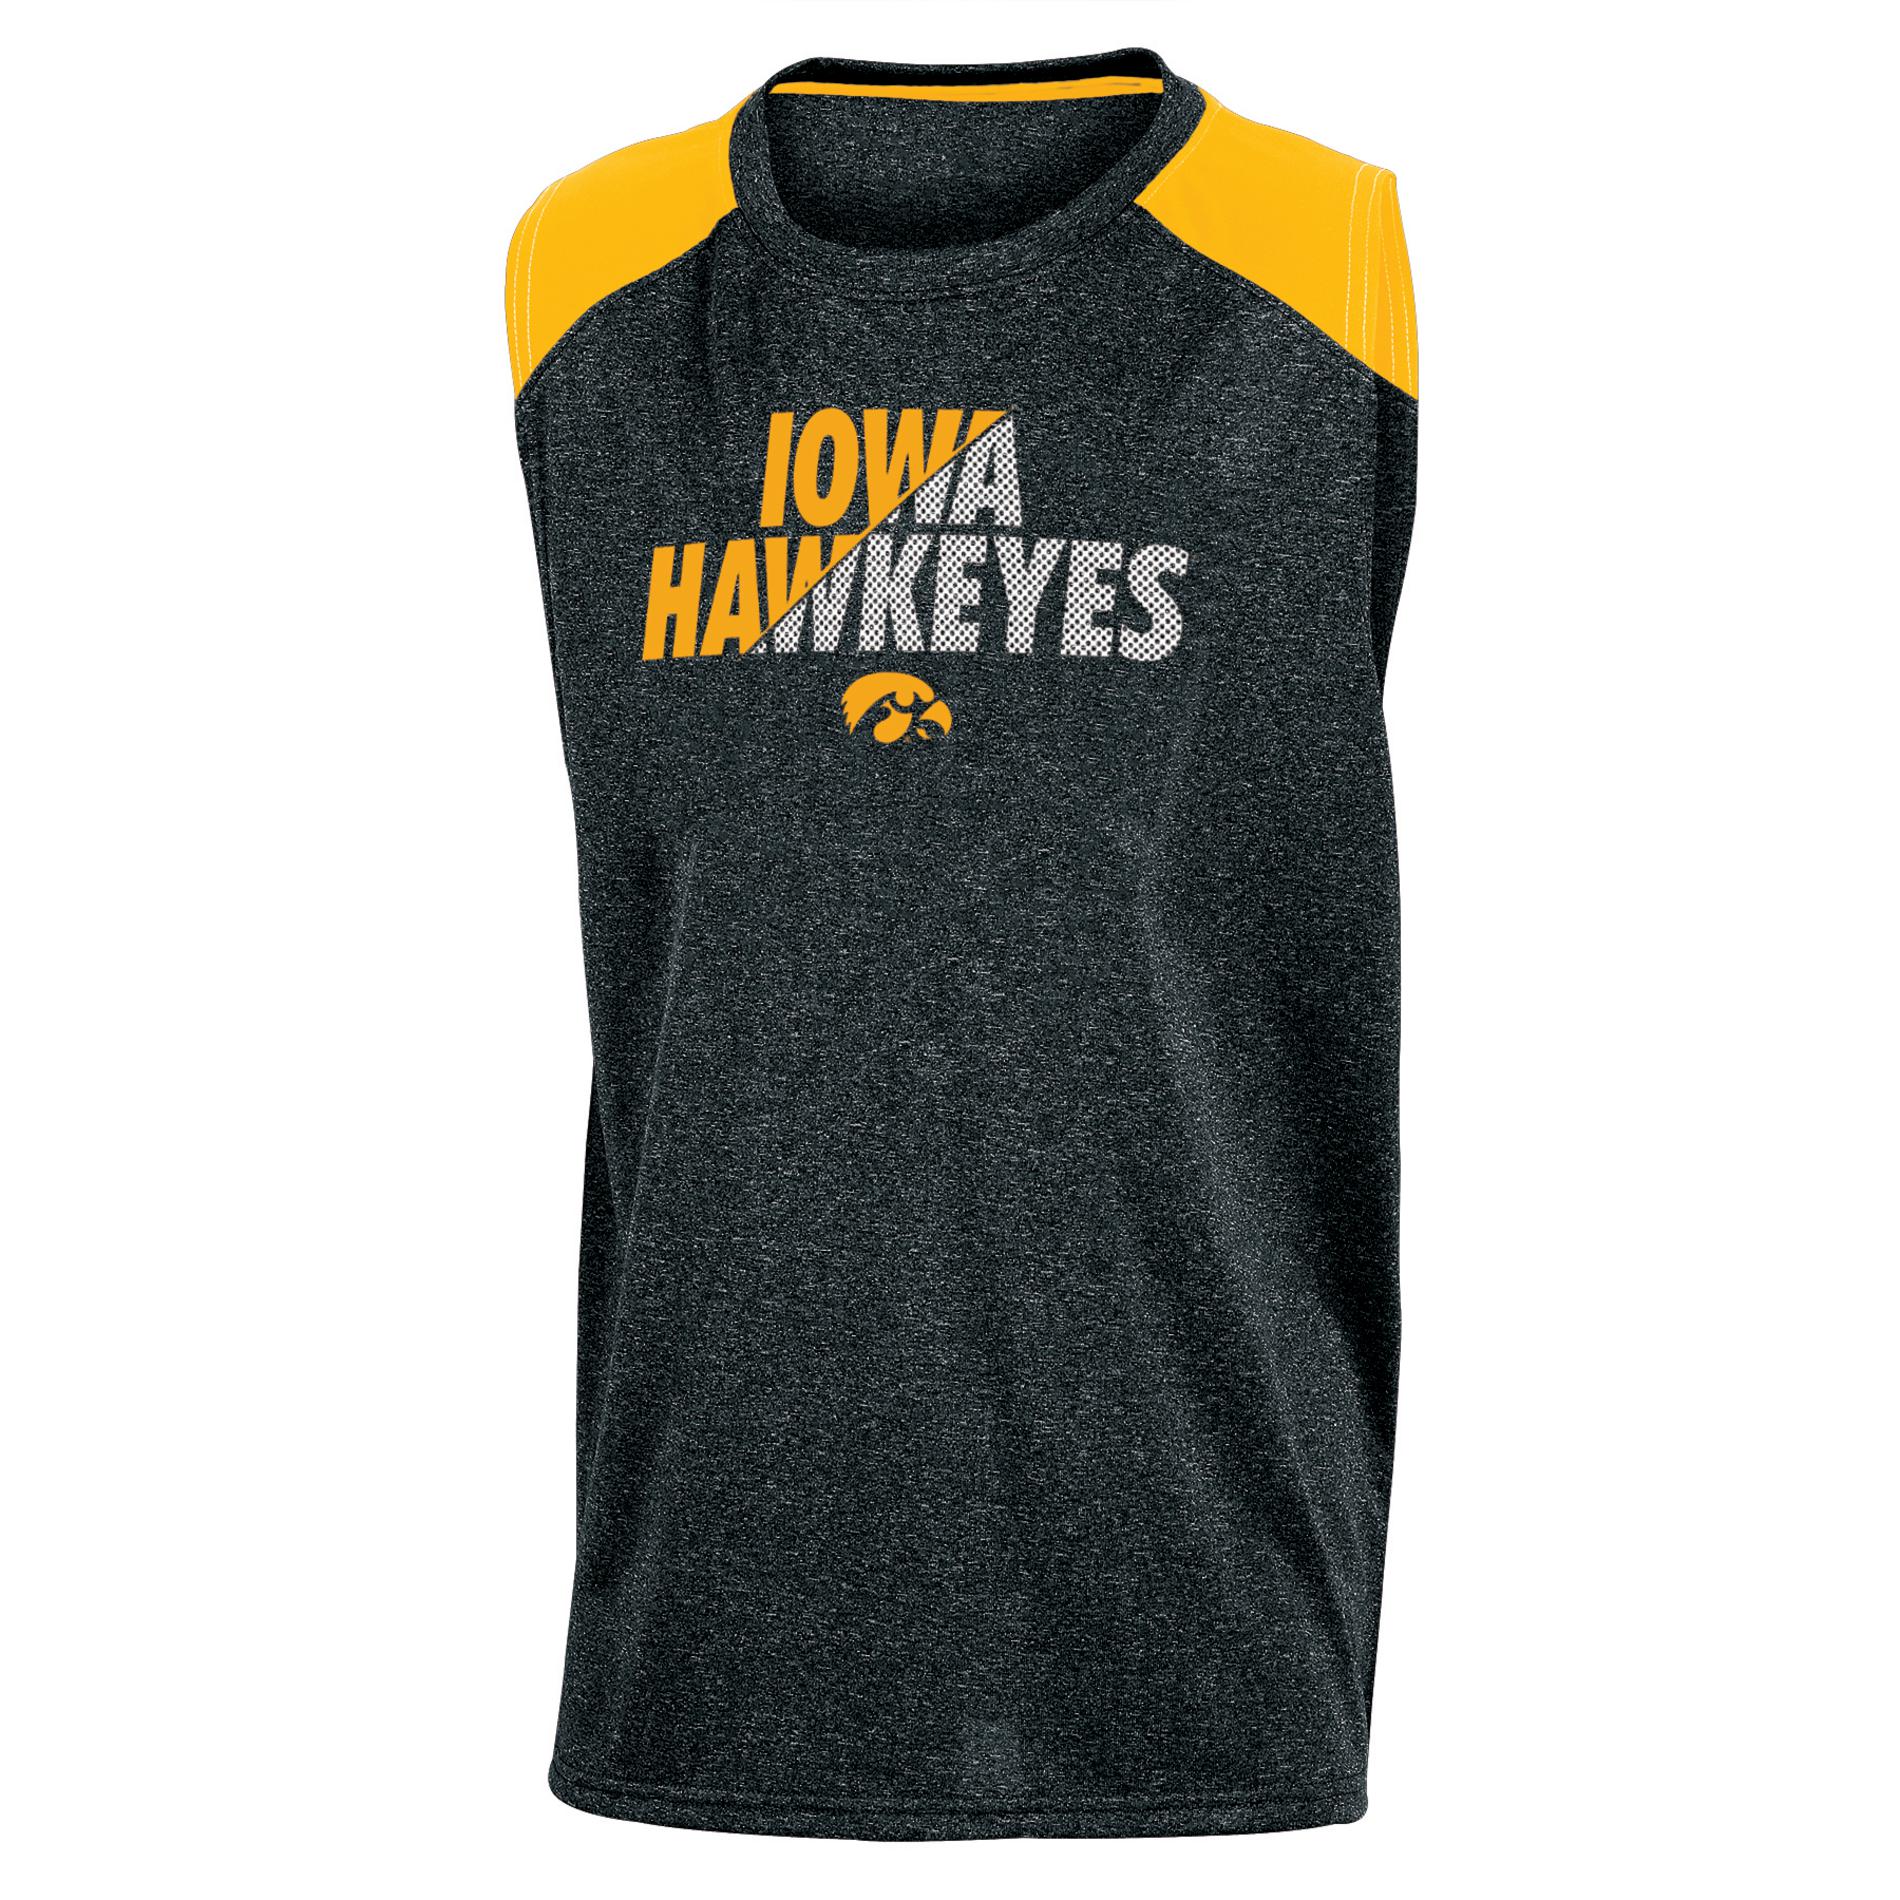 NCAA Boys' Muscle Shirt - Iowa Hawkeyes